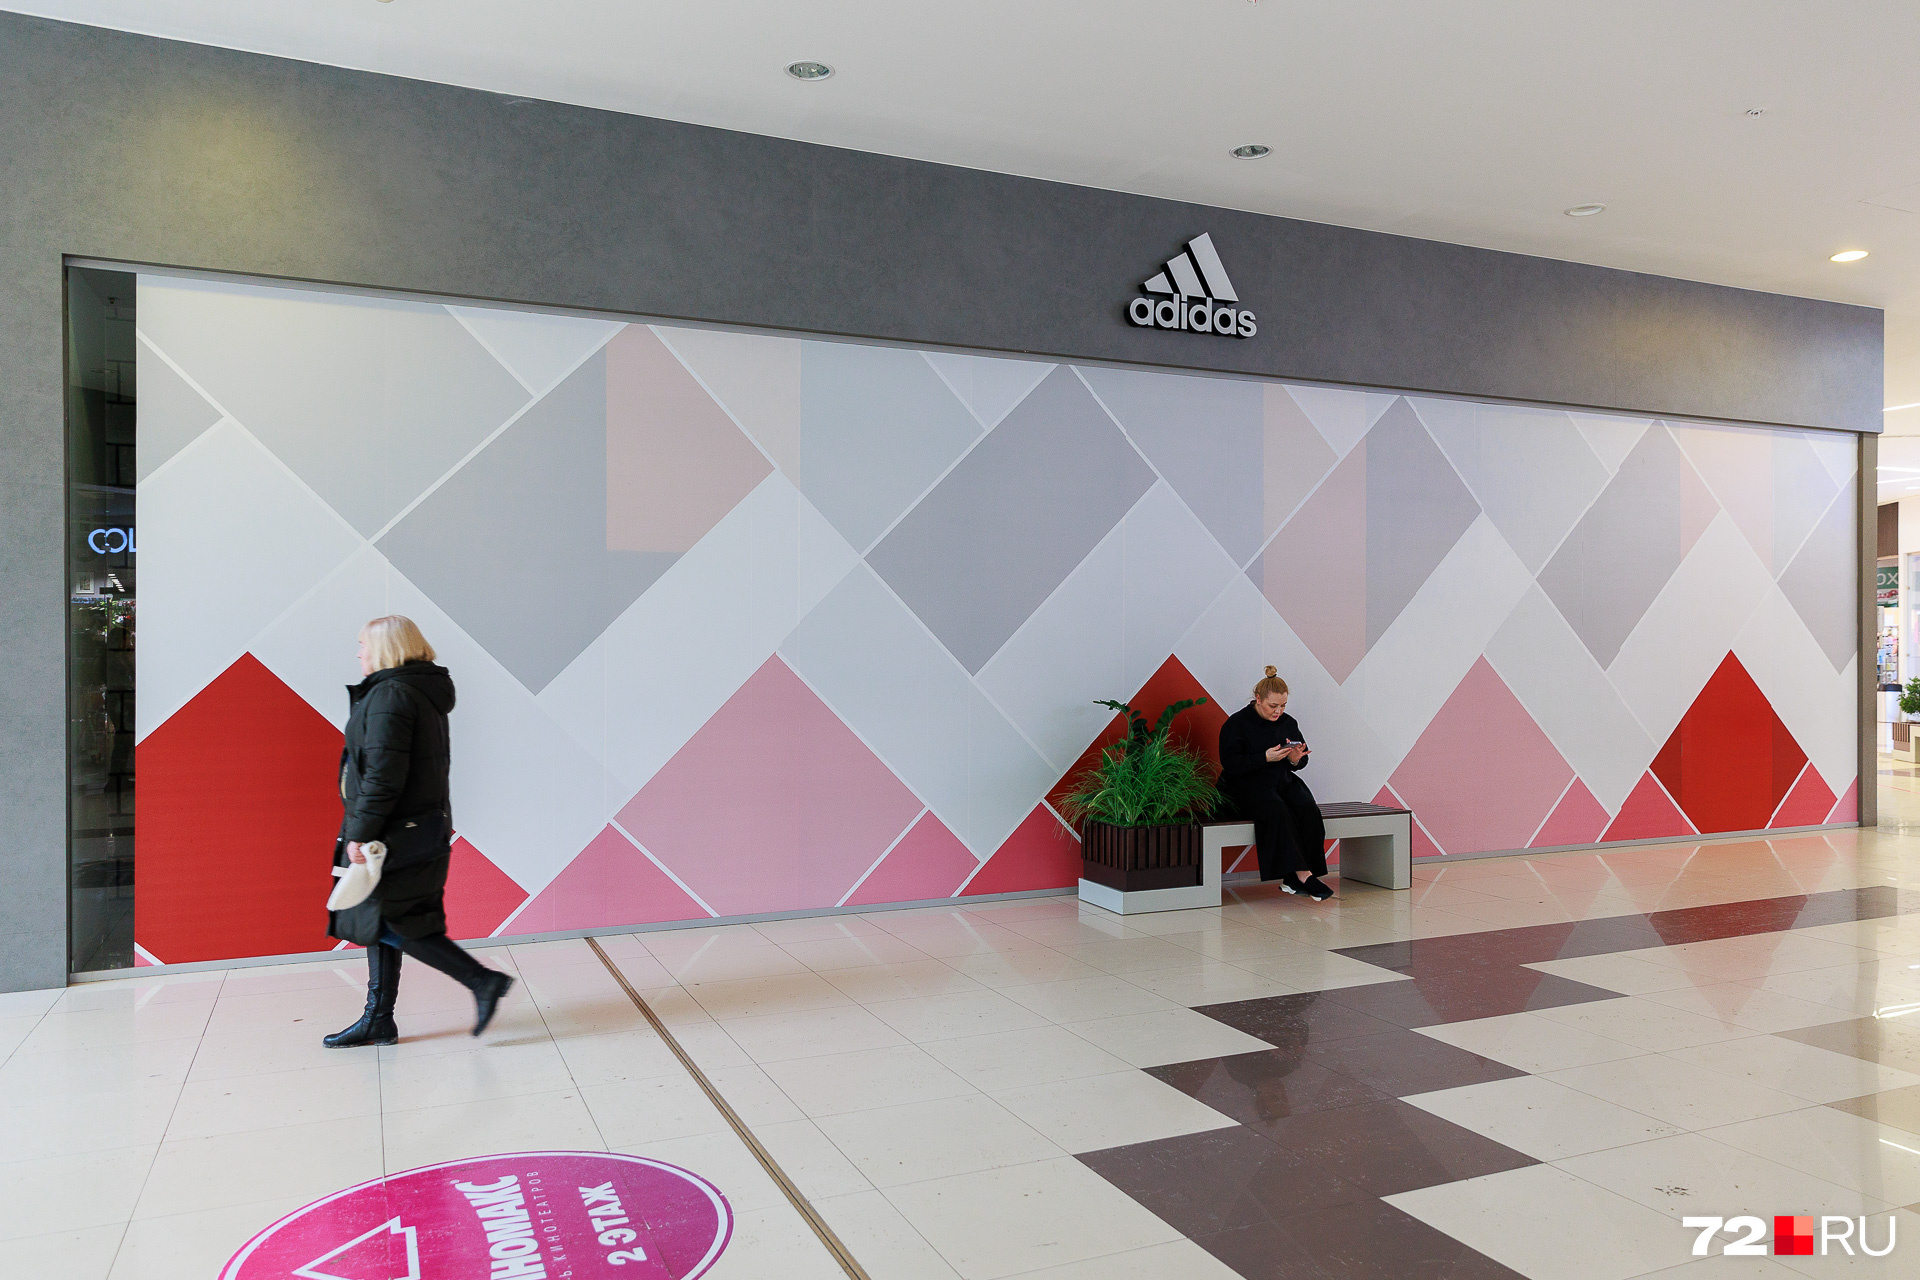 Россию покинул крупный производитель спортивной одежды — Adidas. У компании были отделы в тюменских торговых центрах